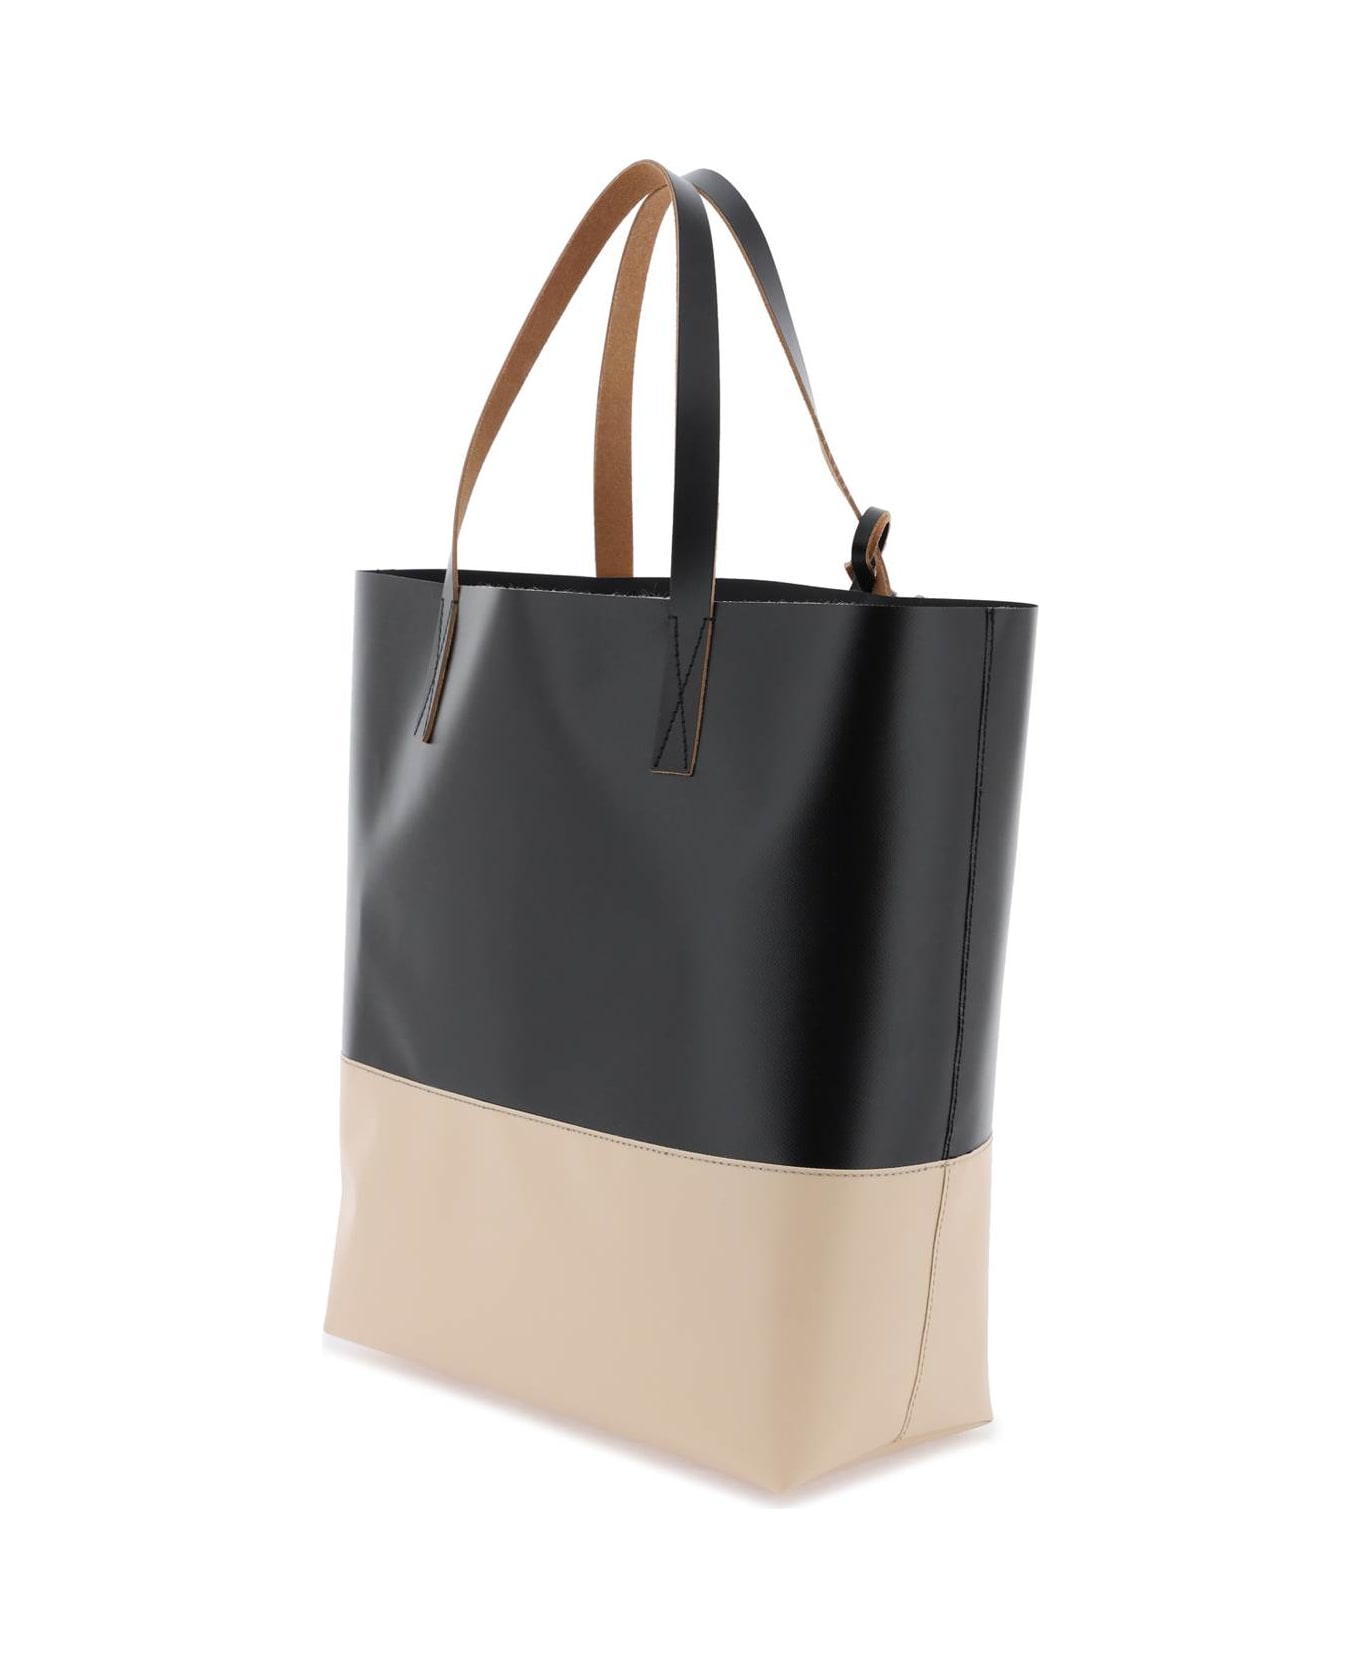 Marni Tribeca Shopping Bag - BLACK CORK (Beige)